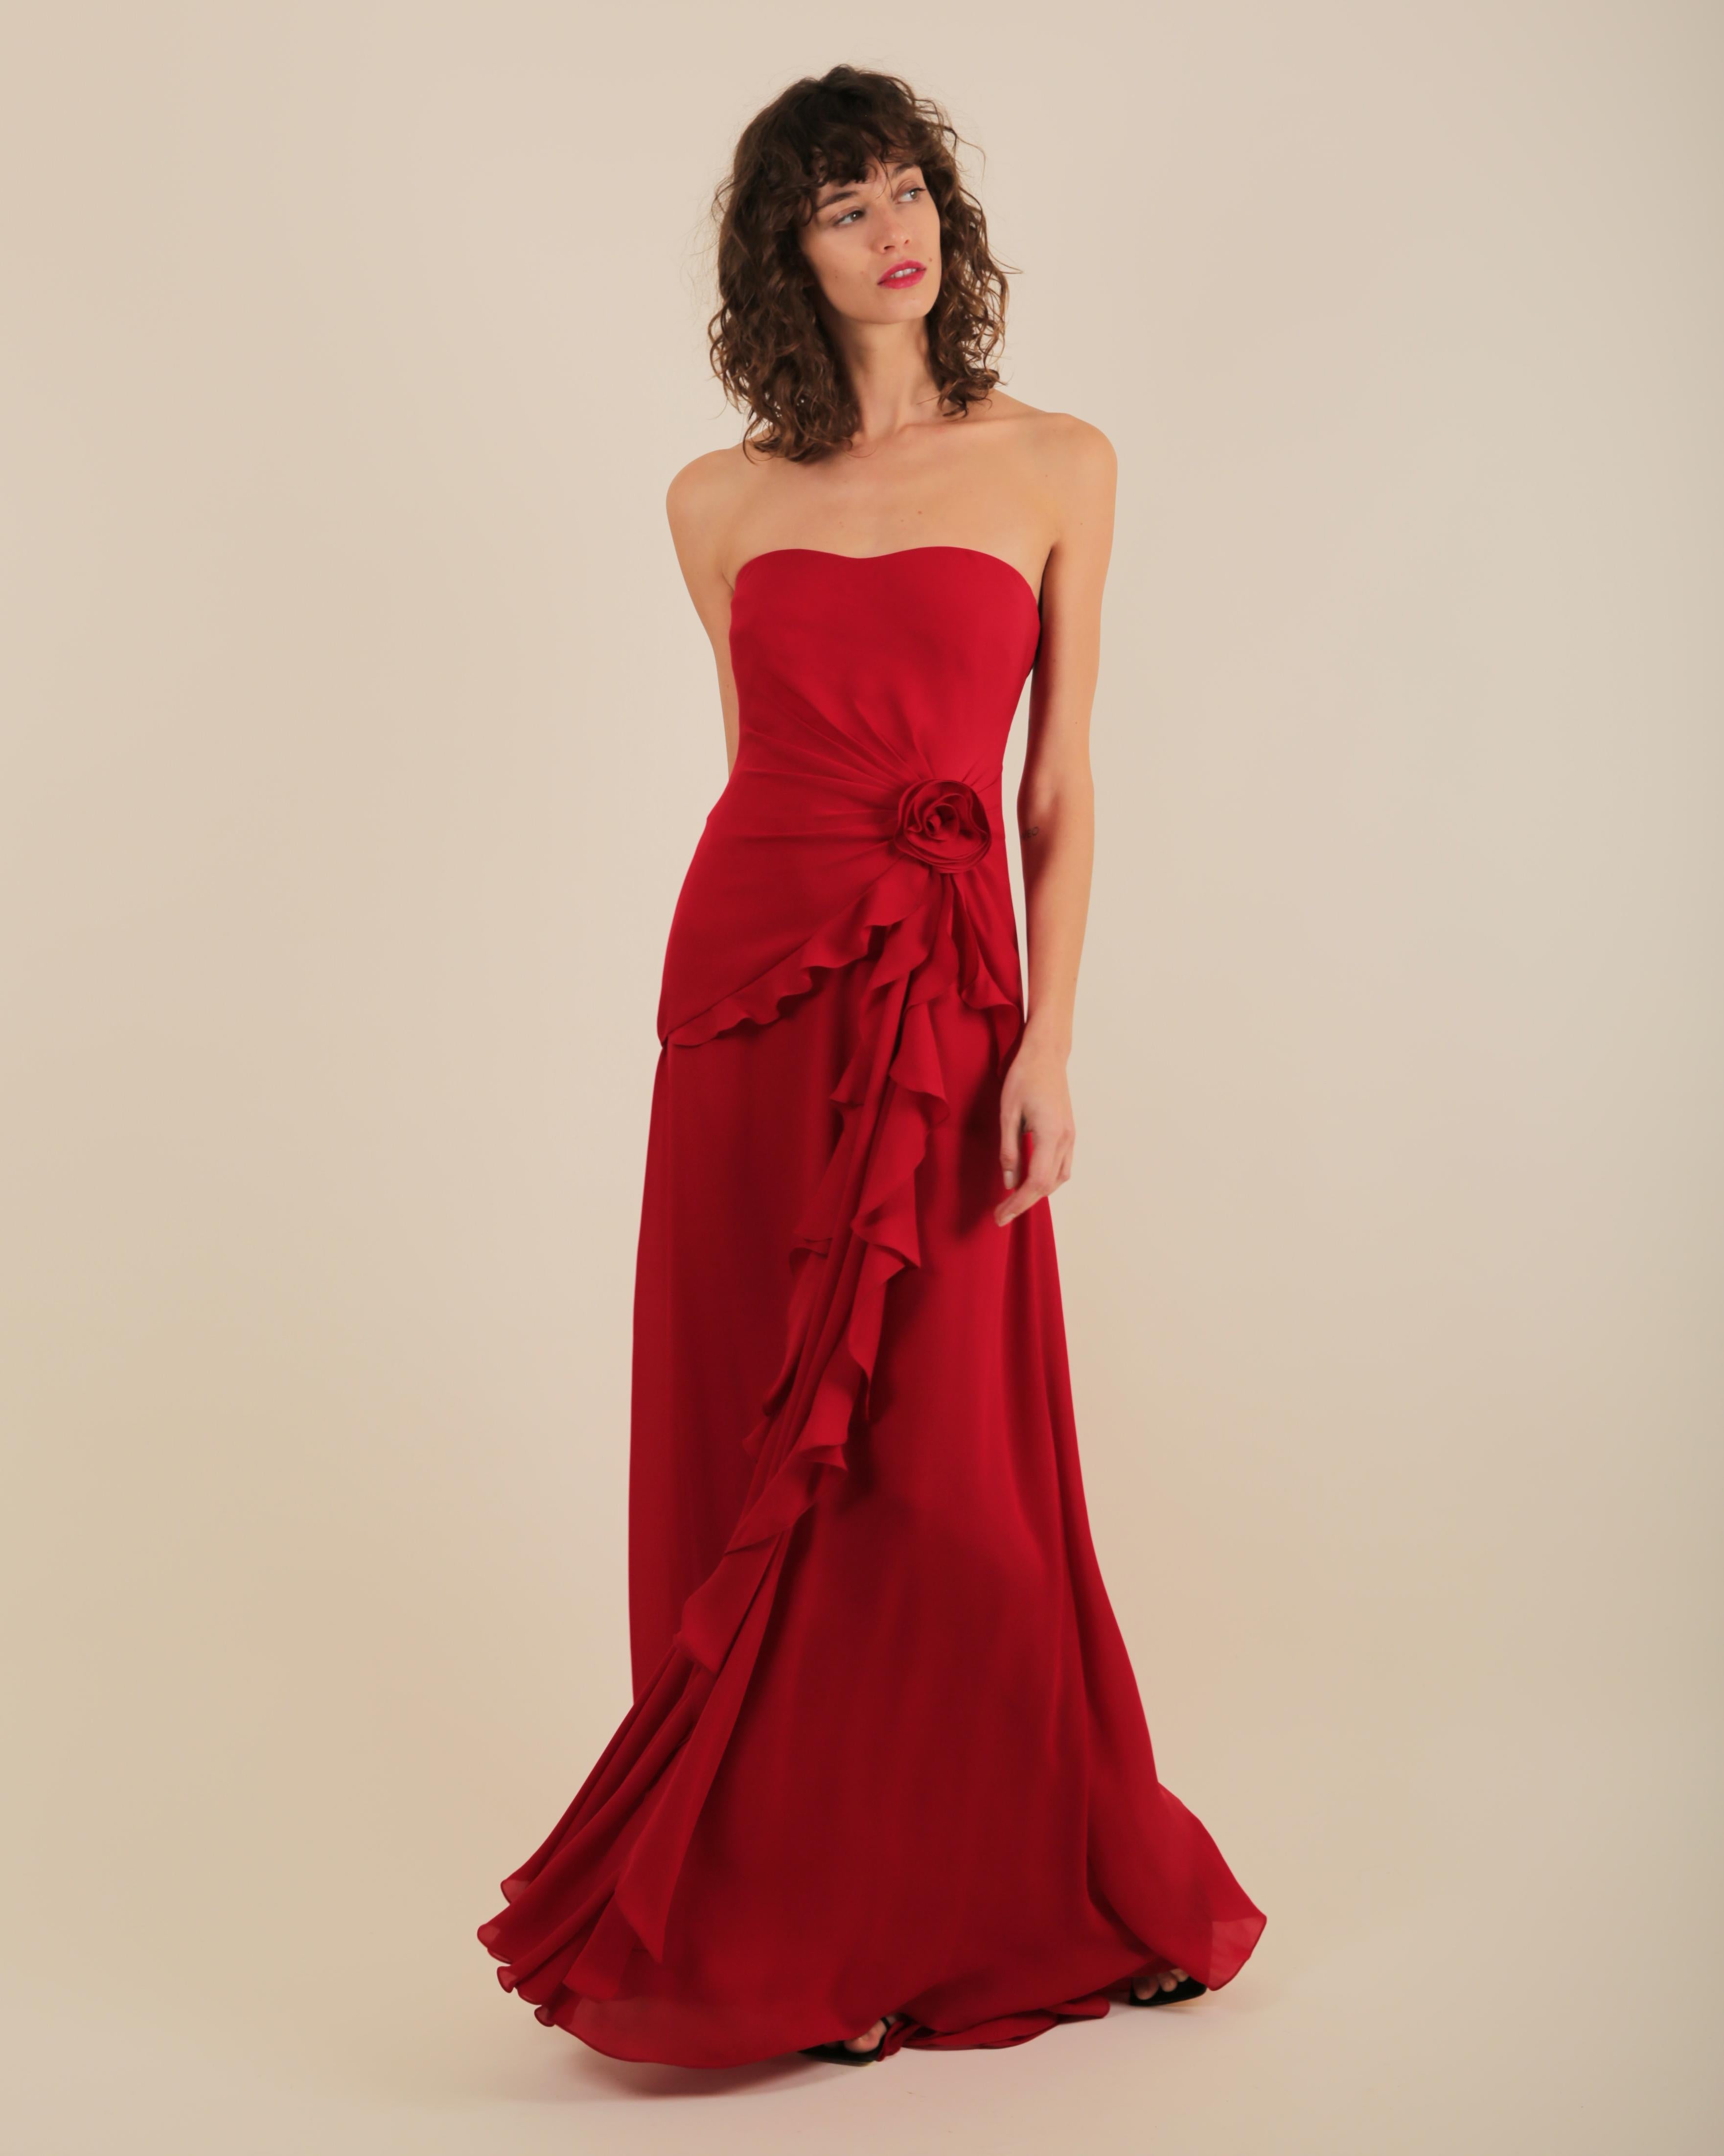 Ralph Lauren SS 2013 strapless bustier red sweetheart neck train silk gown dress 5